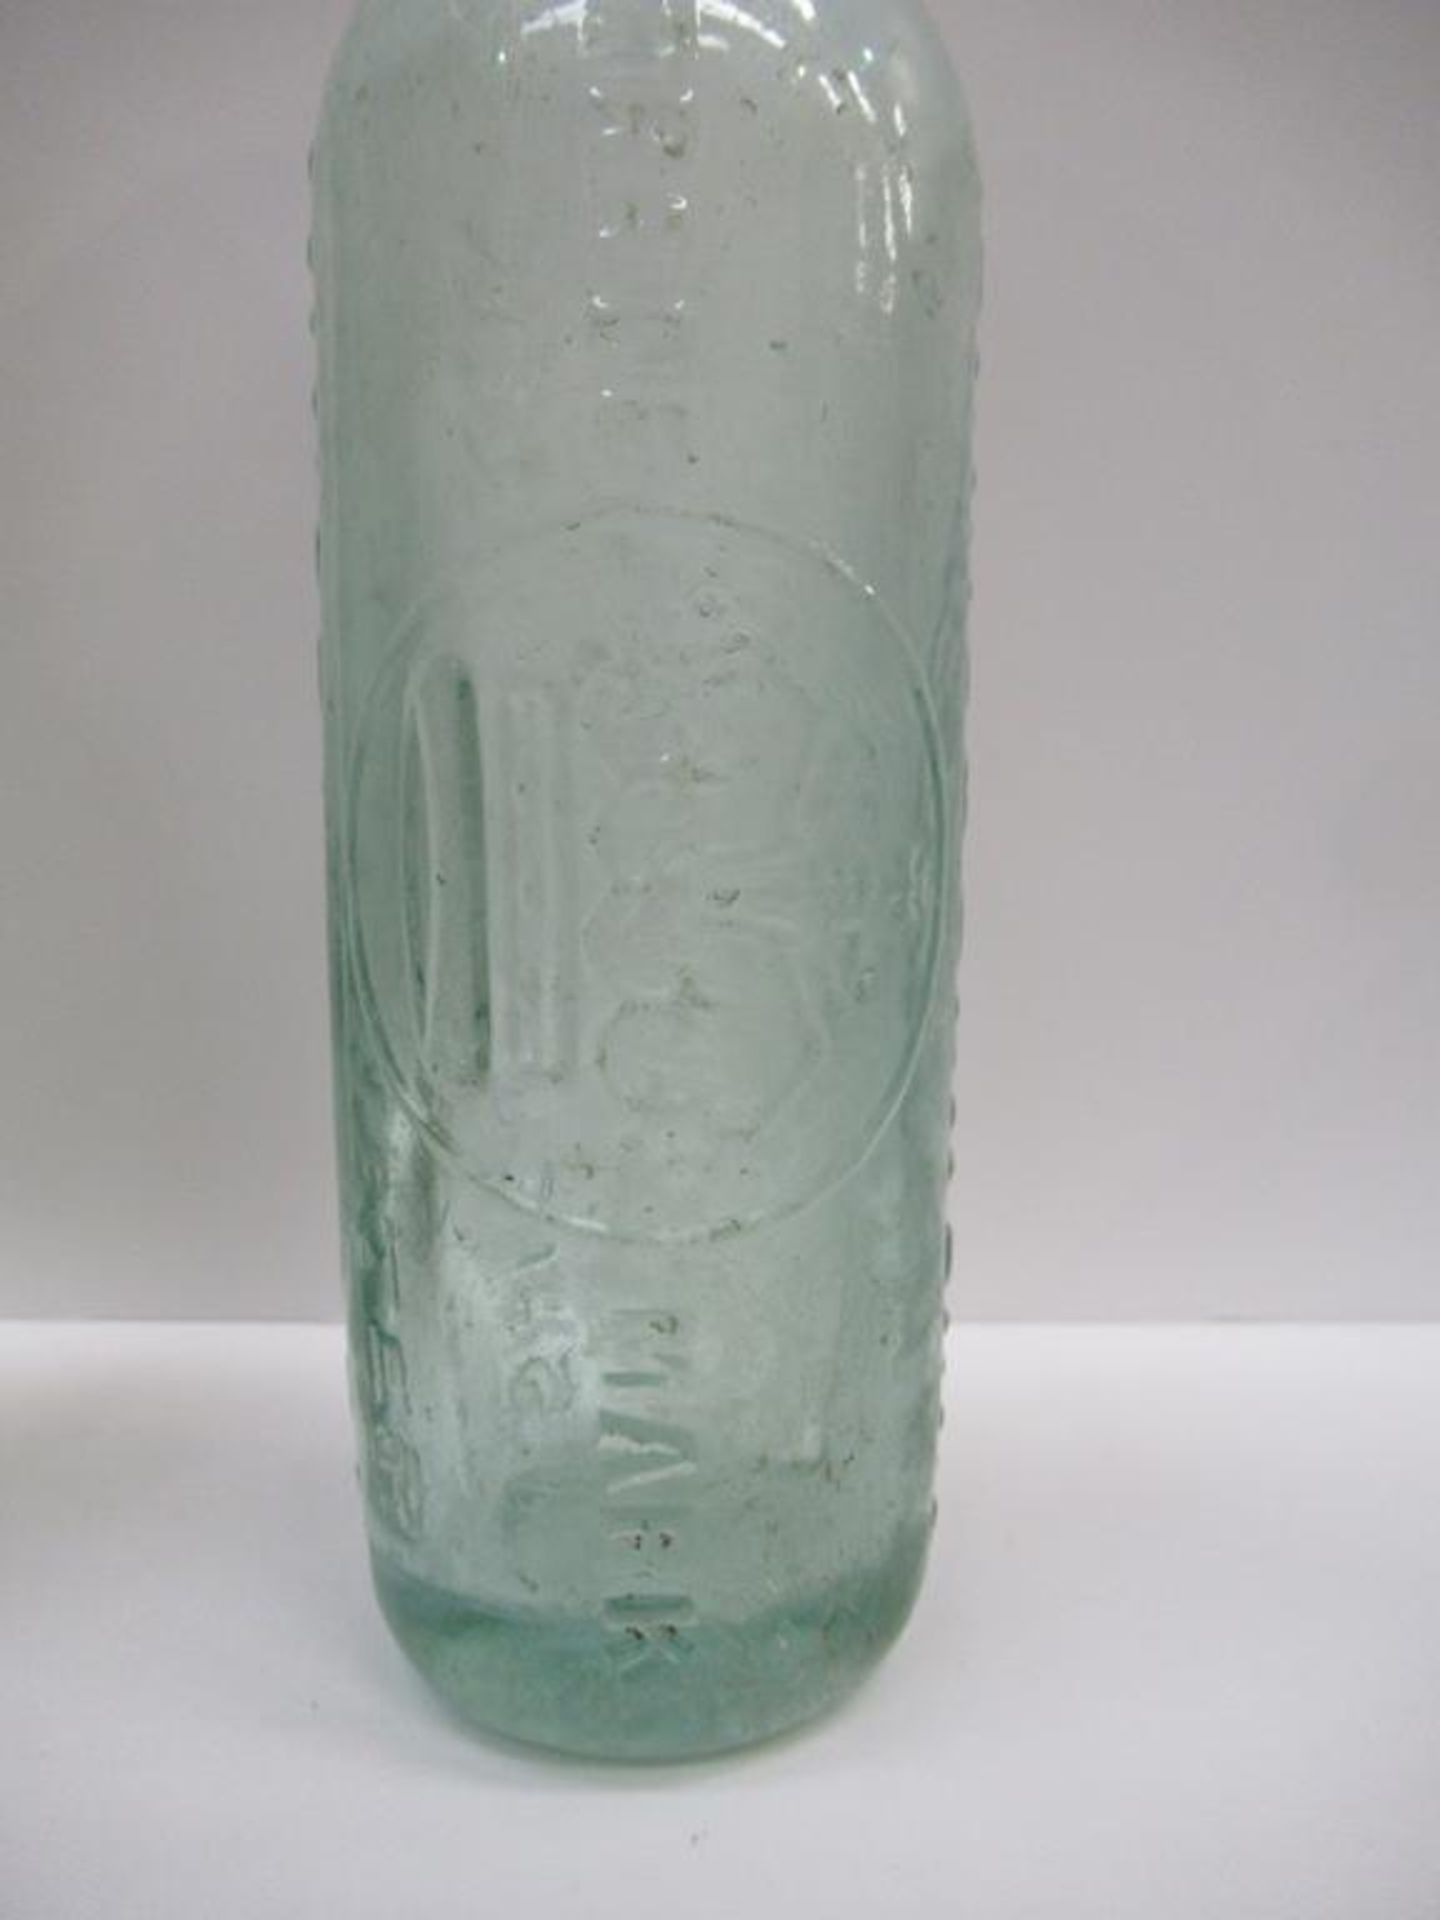 6x Grimsby Morris & Saweard (4) and J.C. Morris (2) bottles - Image 6 of 21